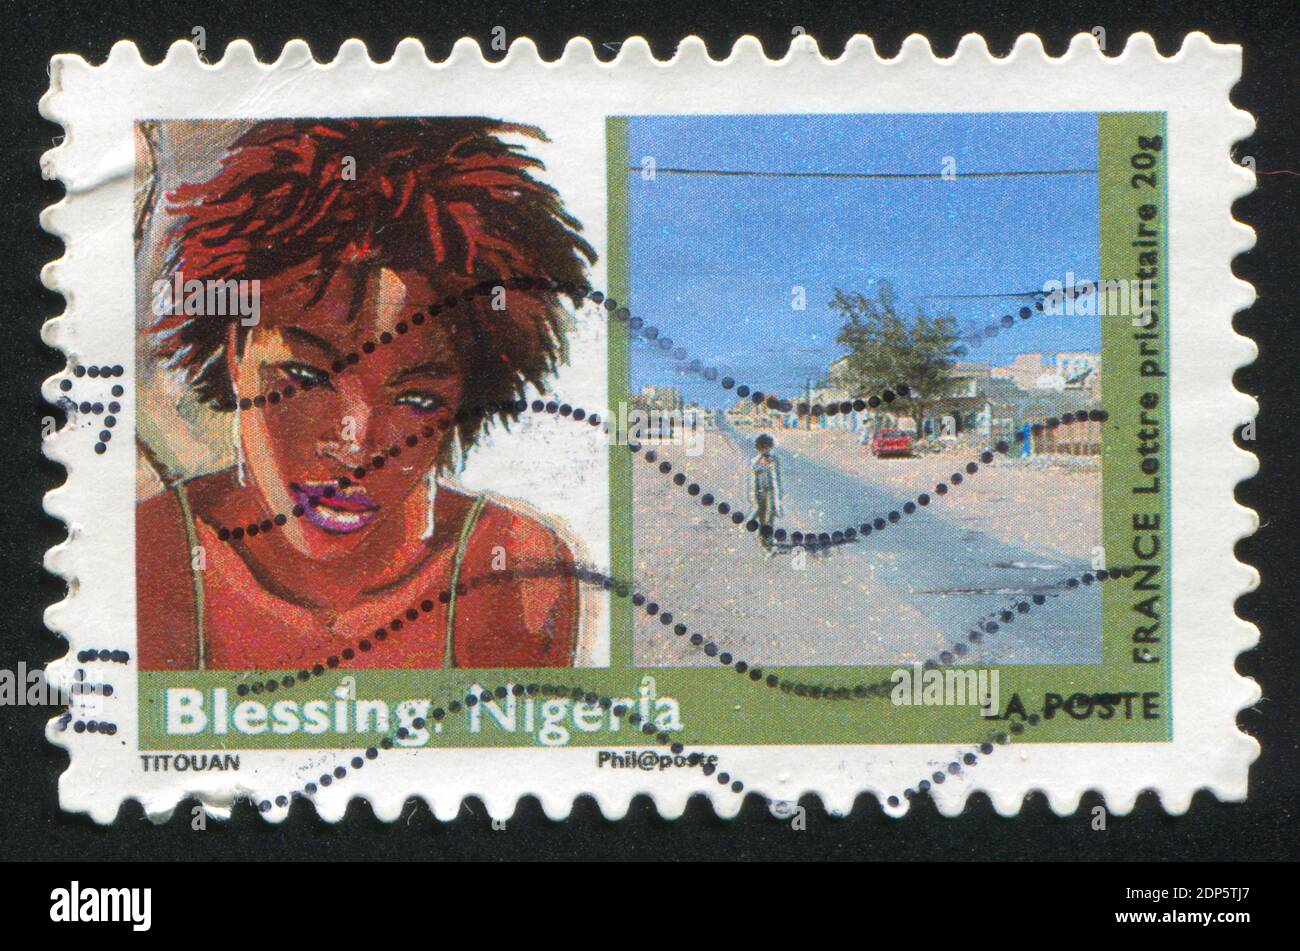 FRANKREICH - UM 2009: Briefmarke gedruckt von Frankreich, zeigt Kunst, Frau, Segen (Nigeria), um 2009 Stockfoto